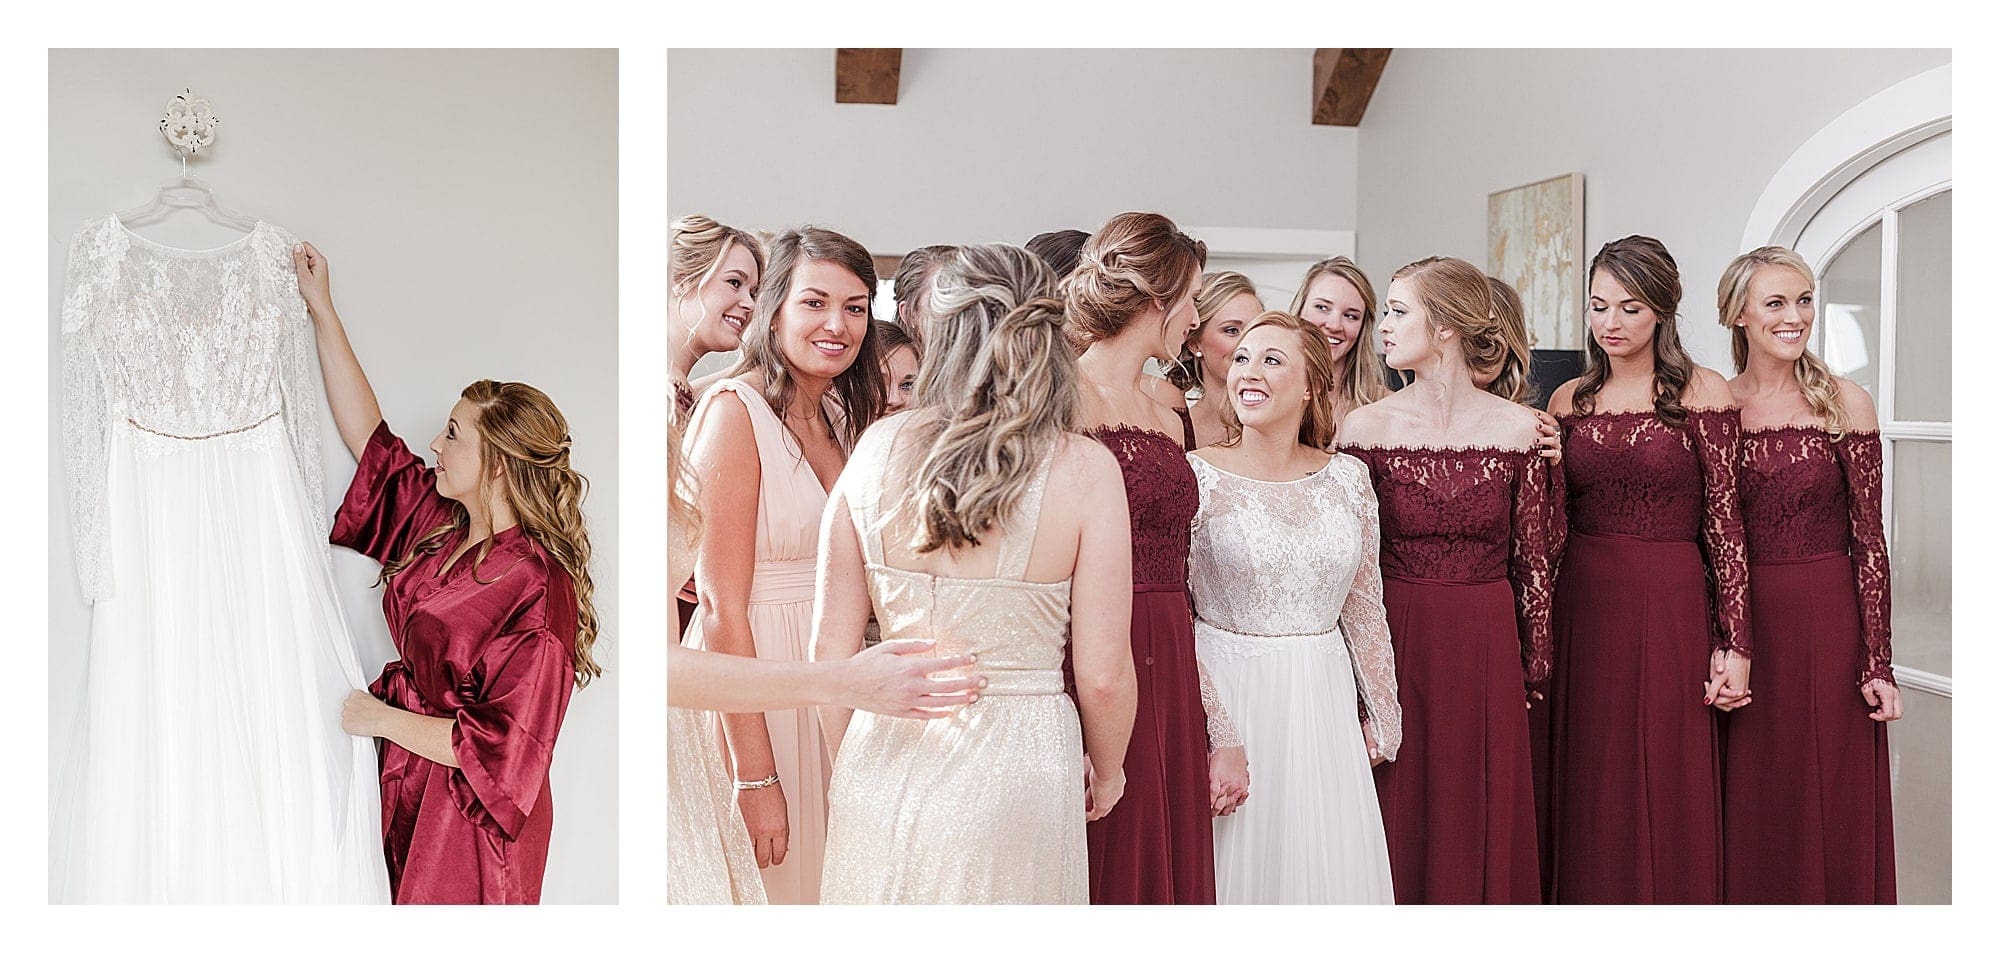 Bridemaids-surround-bride